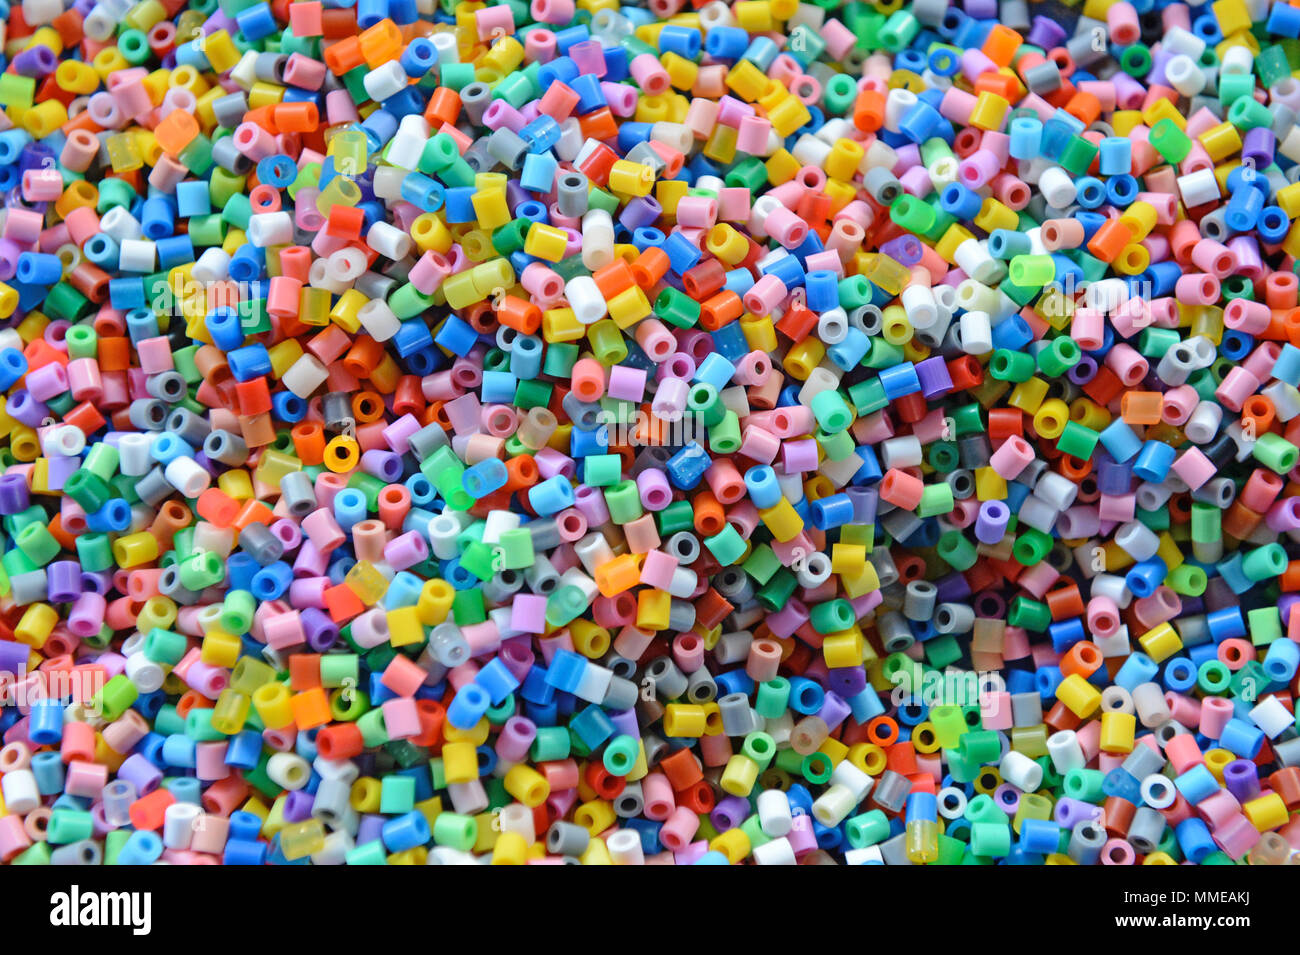 Hama beads immagini e fotografie stock ad alta risoluzione - Alamy